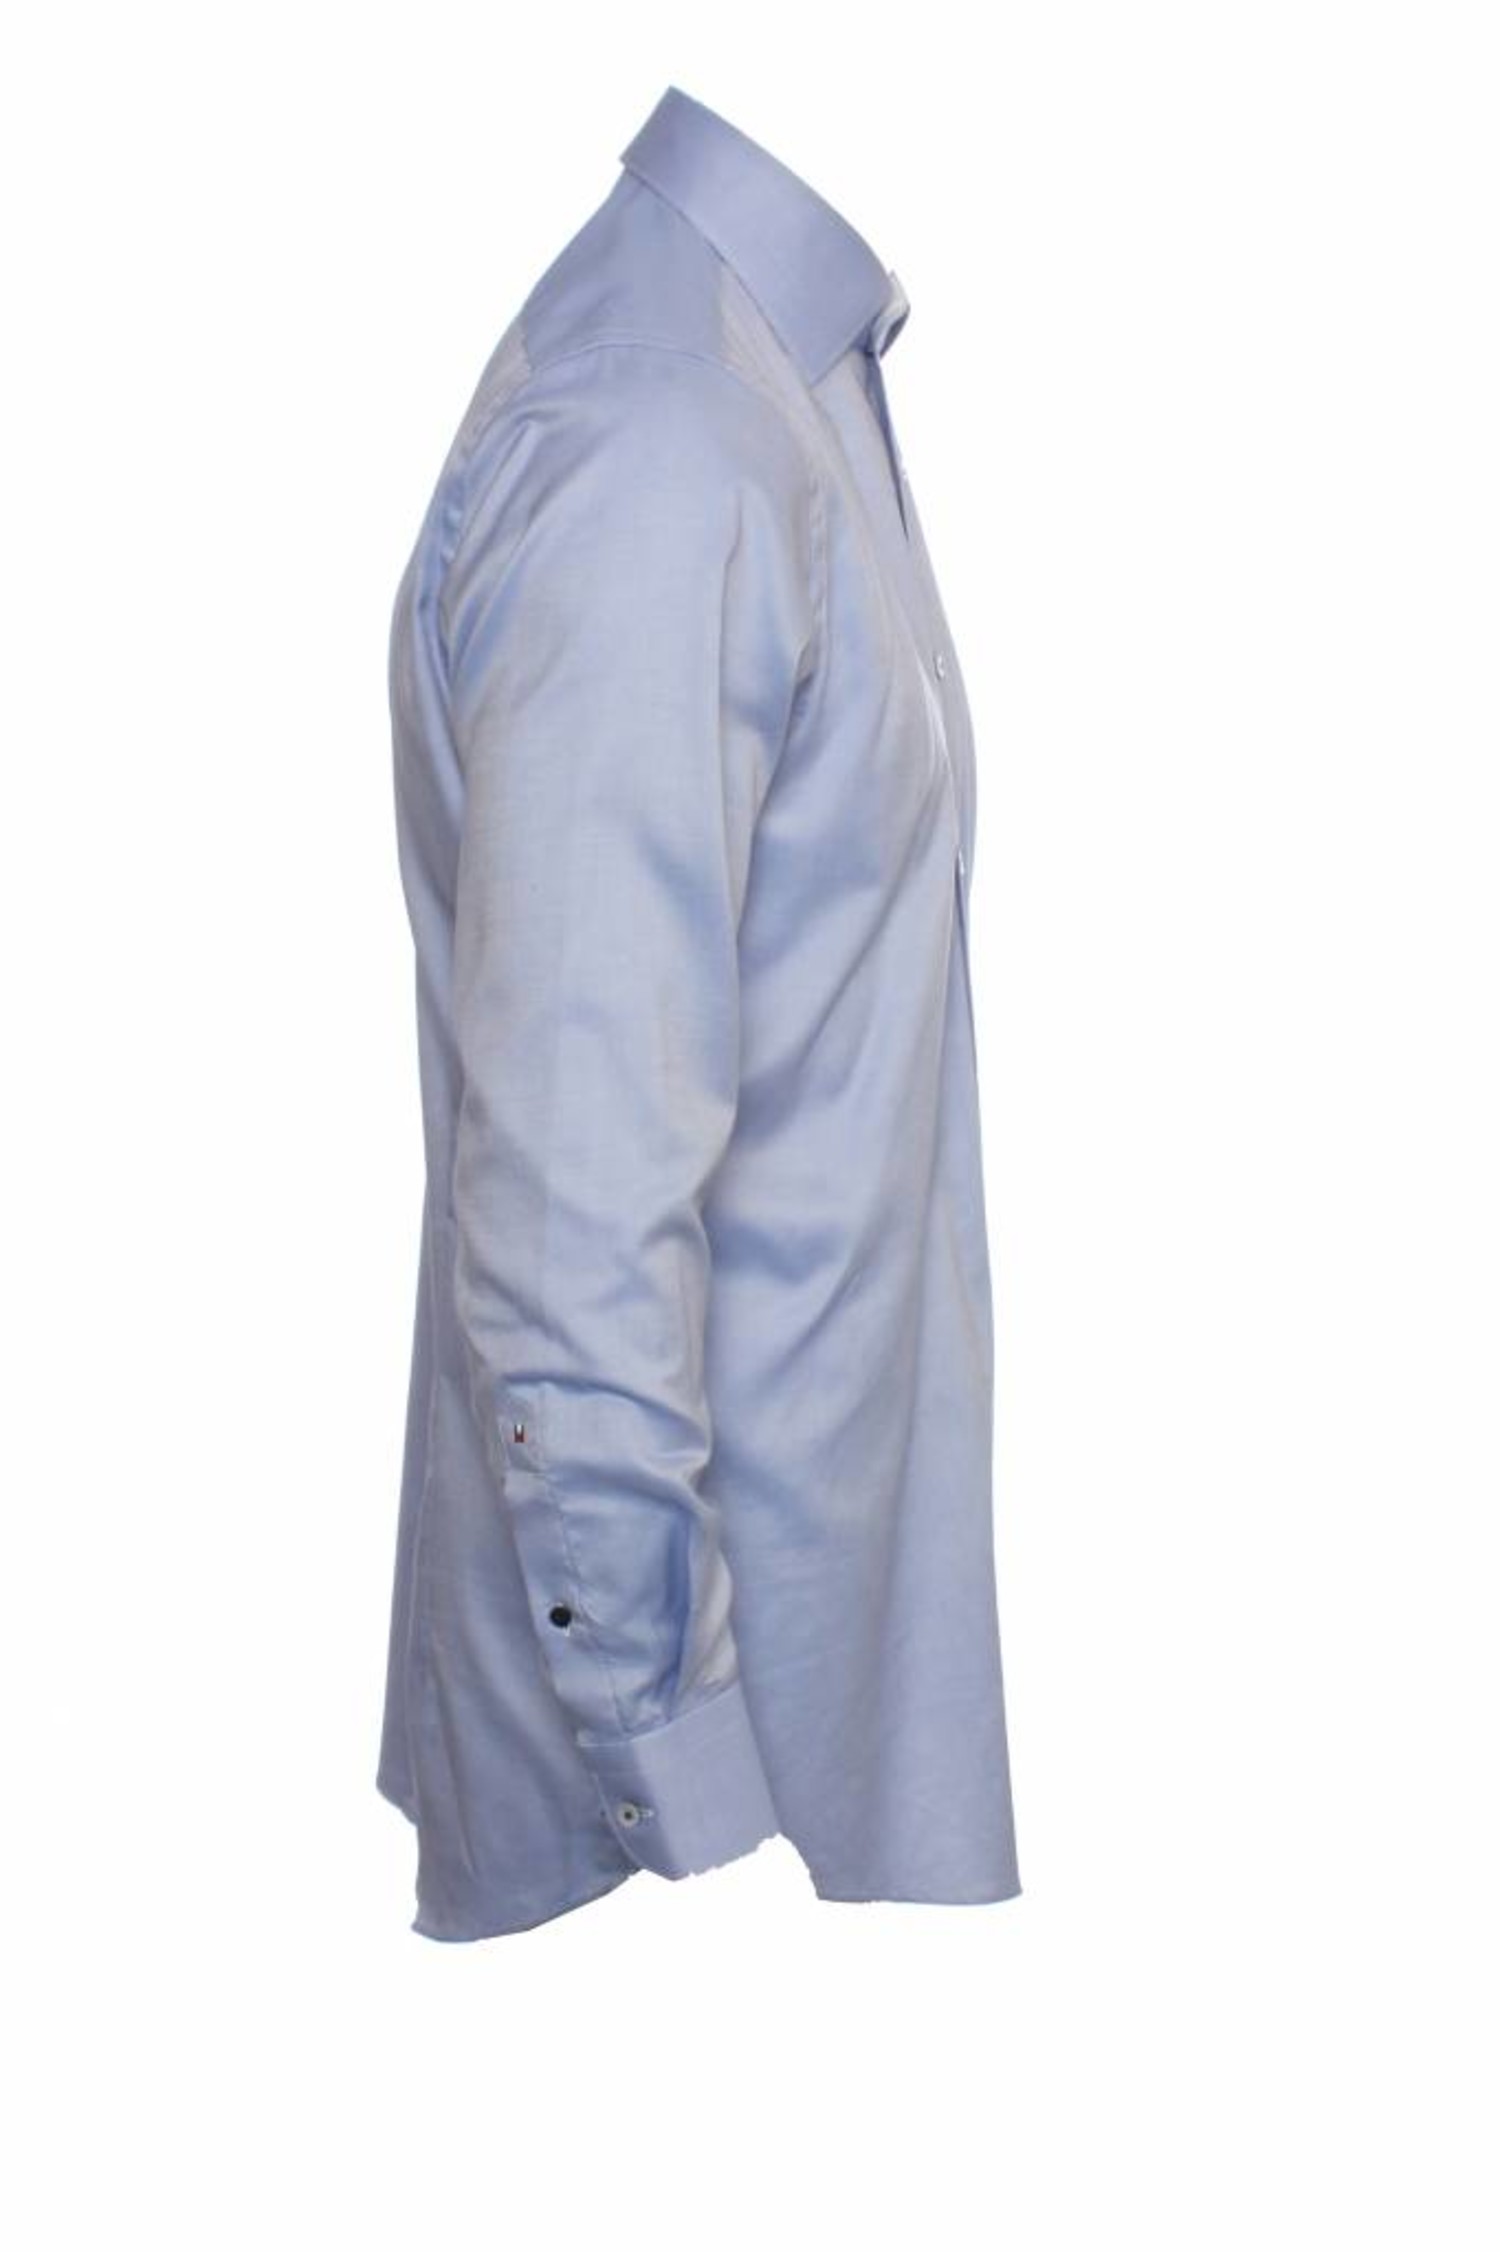 Light blue Tommy Hilfiger tee shirt / tshirt, men's branded designer –  System F